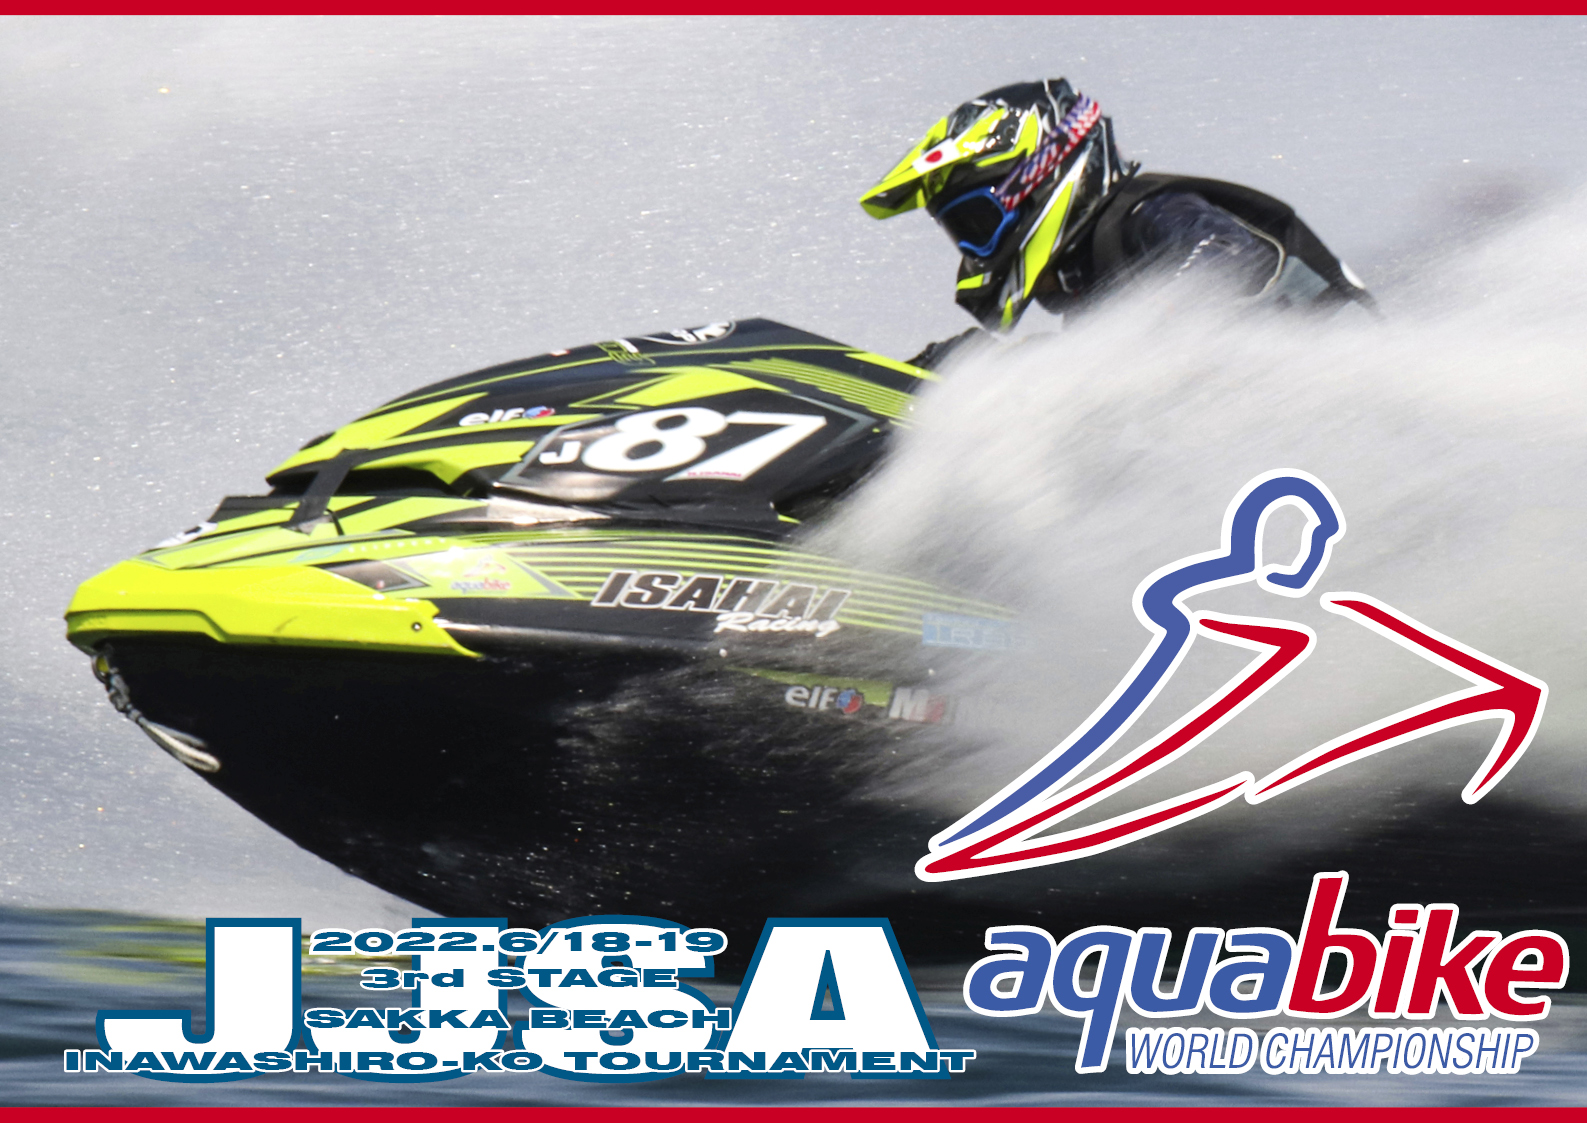 【第3戦・猪苗代大会】日本の RACE 【aquabike】「SKI DIVISION GP1」と【ALL JAPAN JET SPORTS SERIES】「OTHER SKI RACE」2022